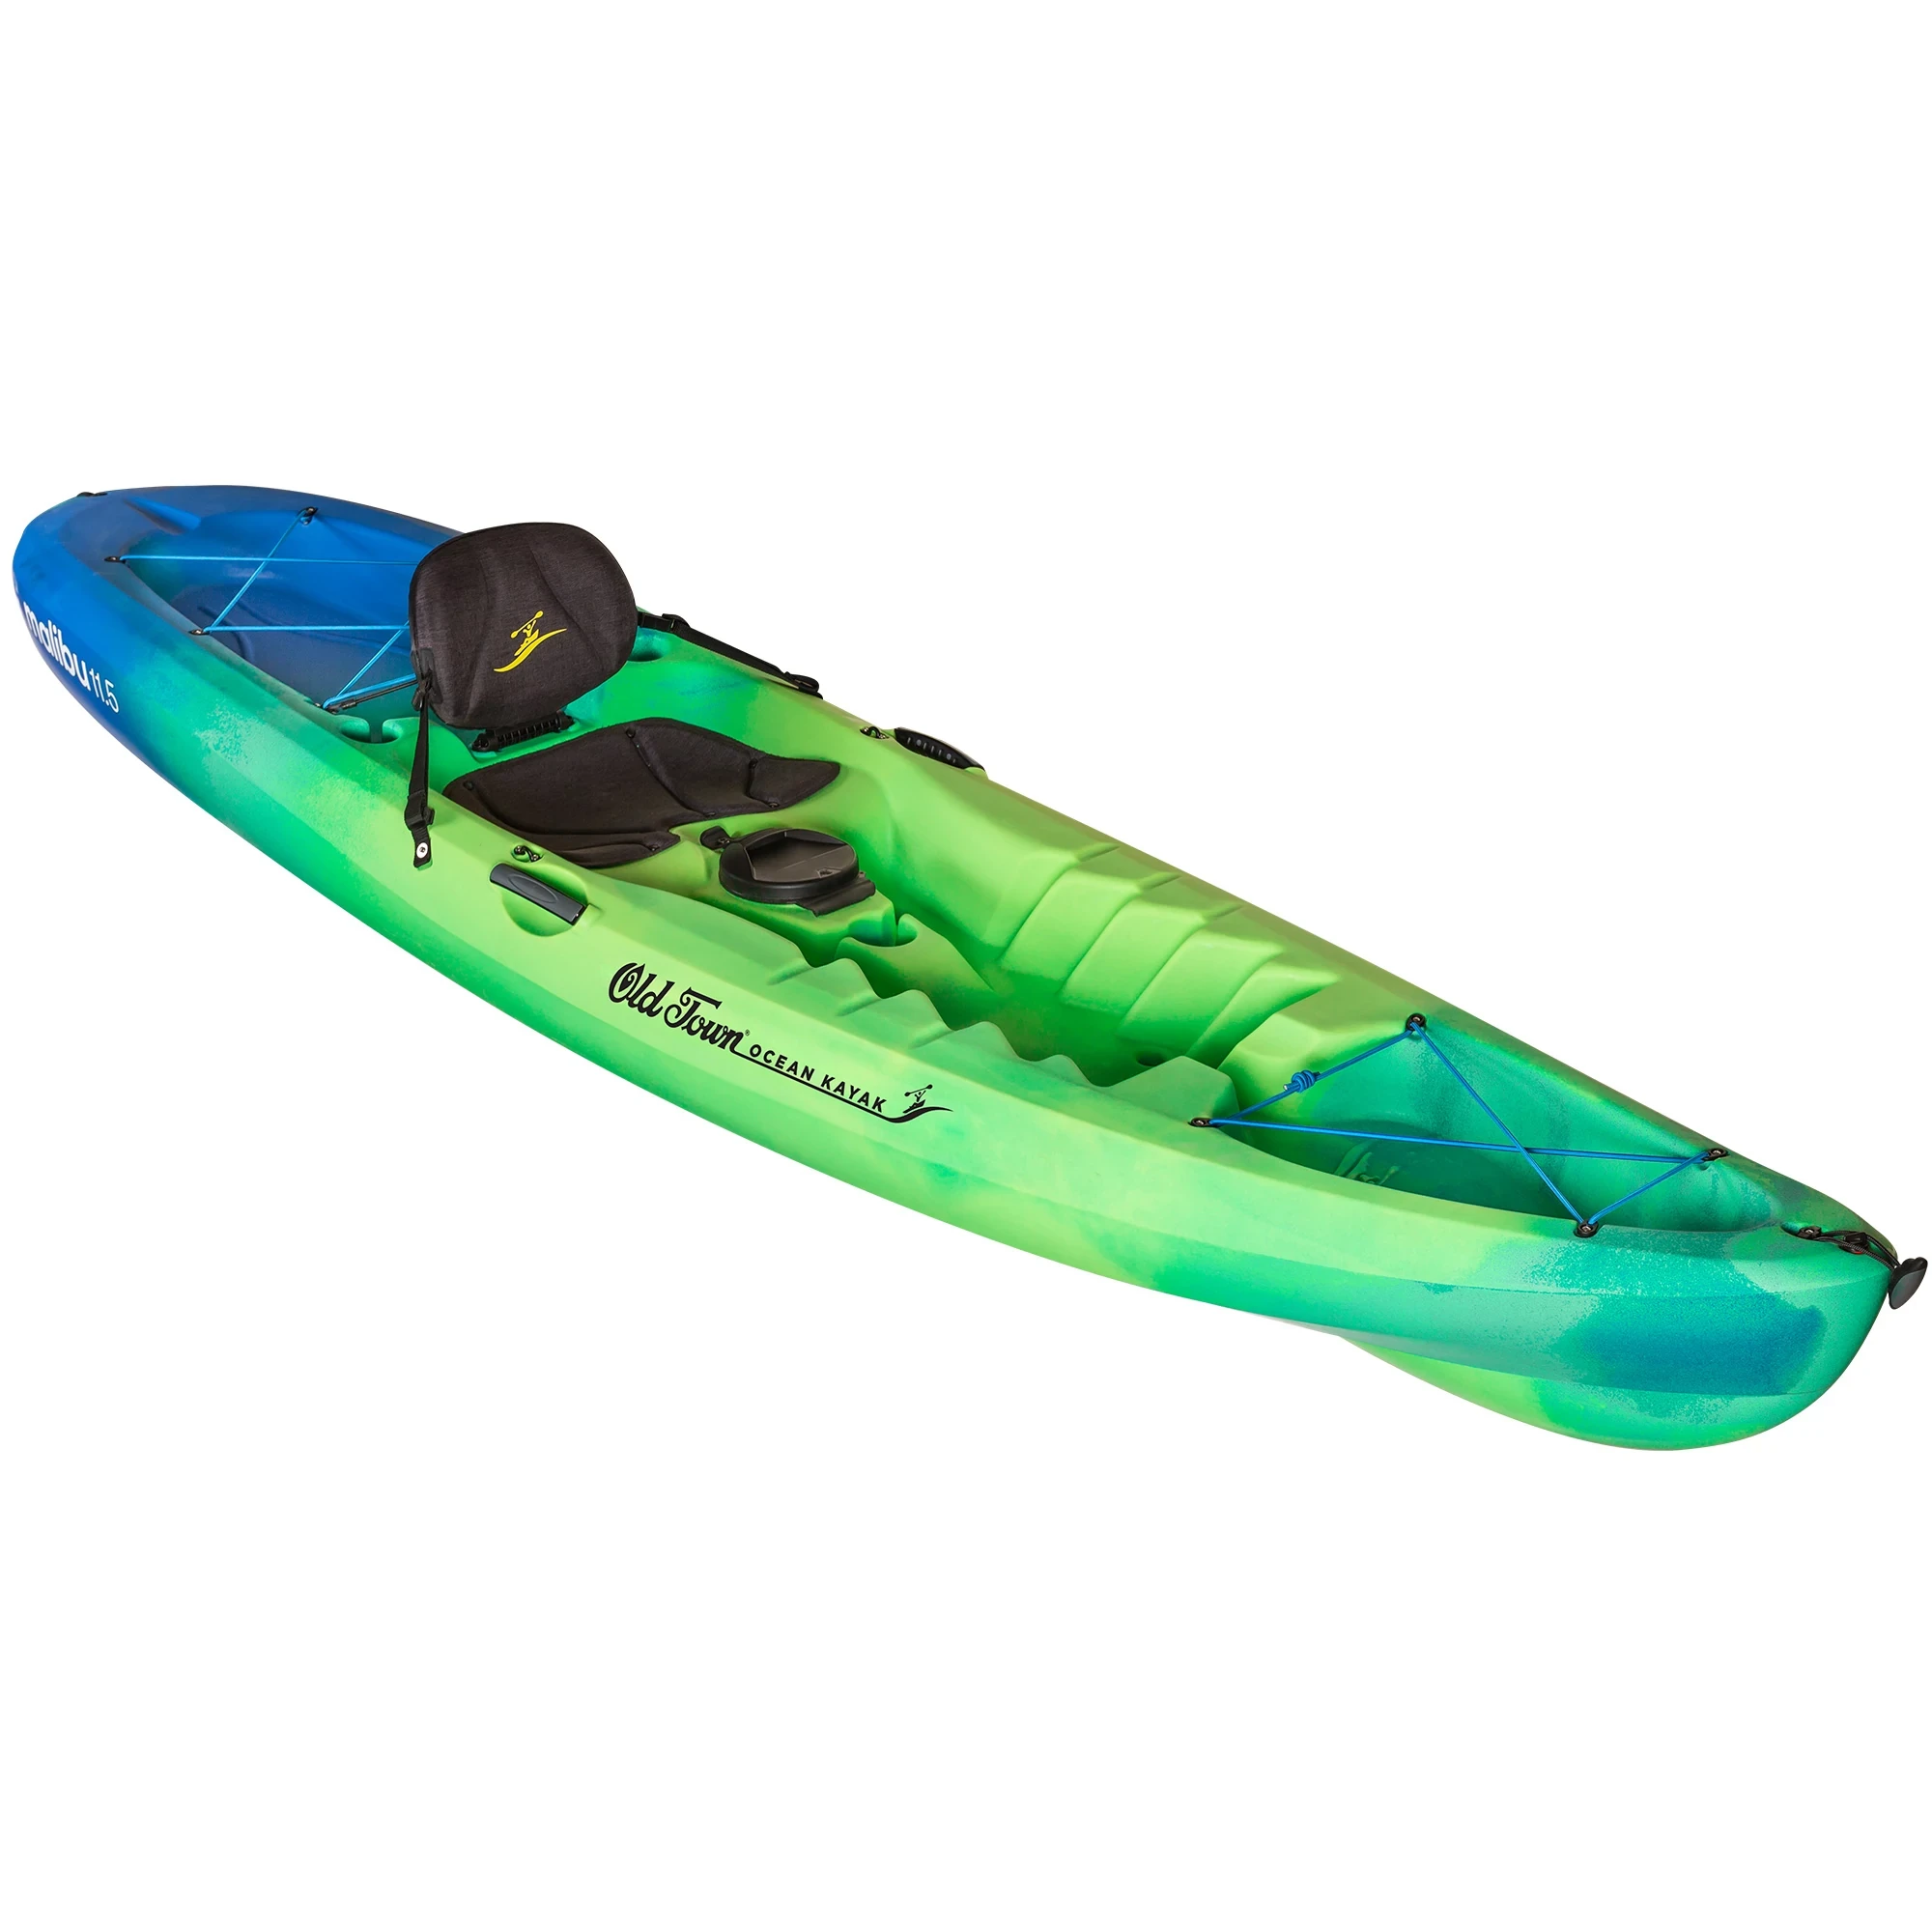 Ocean Kayak Malibu 11.5 - Ahi - Angled View